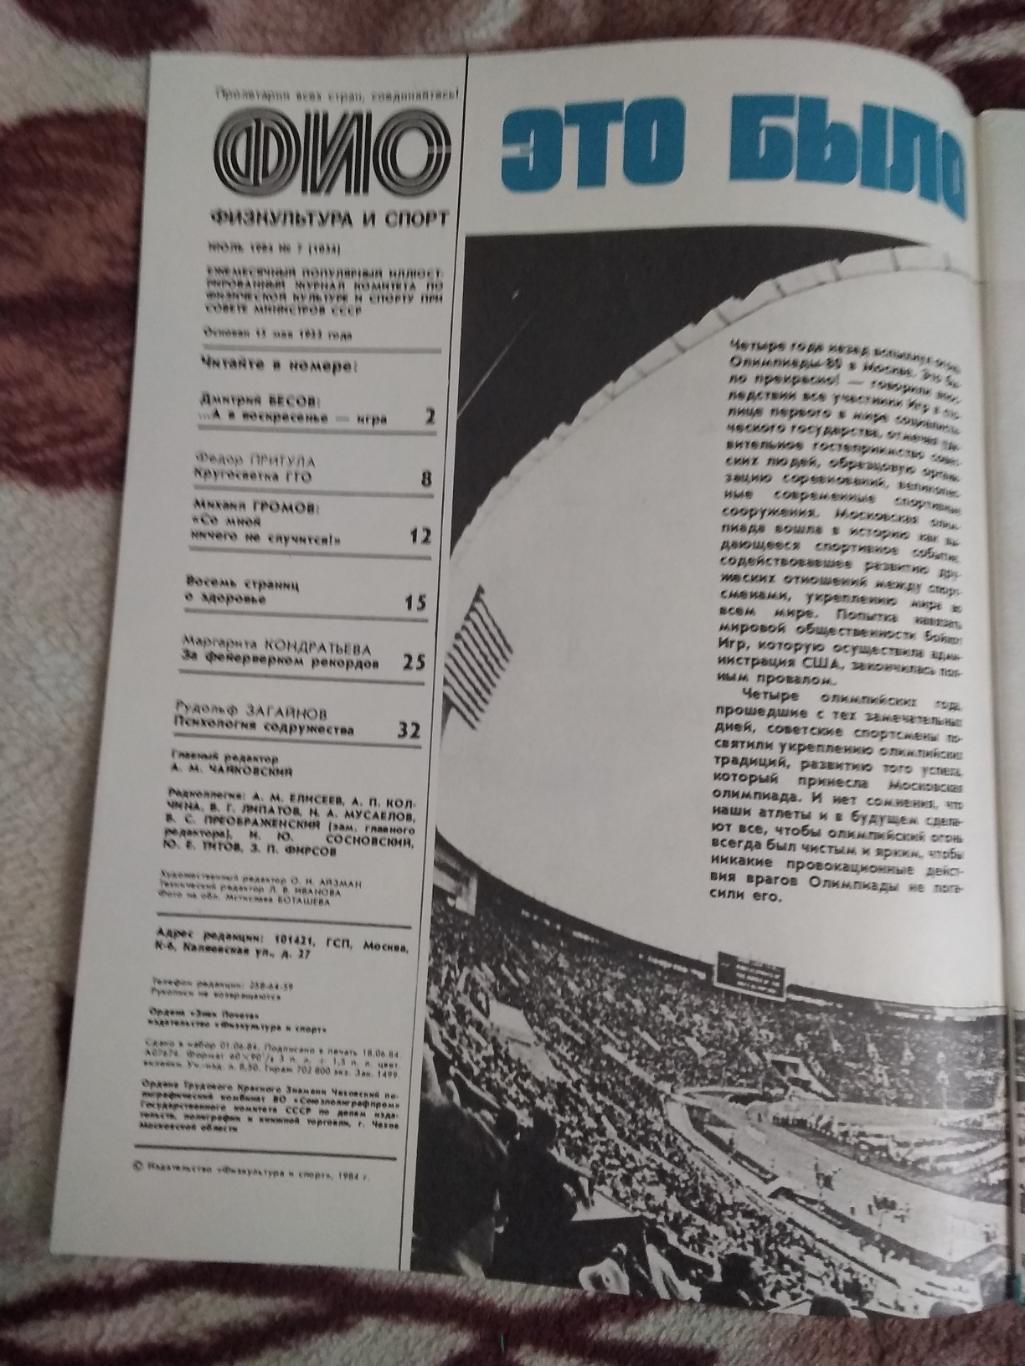 Журнал.Физкультура и спорт № 7 1984 г. (ФиС). 1